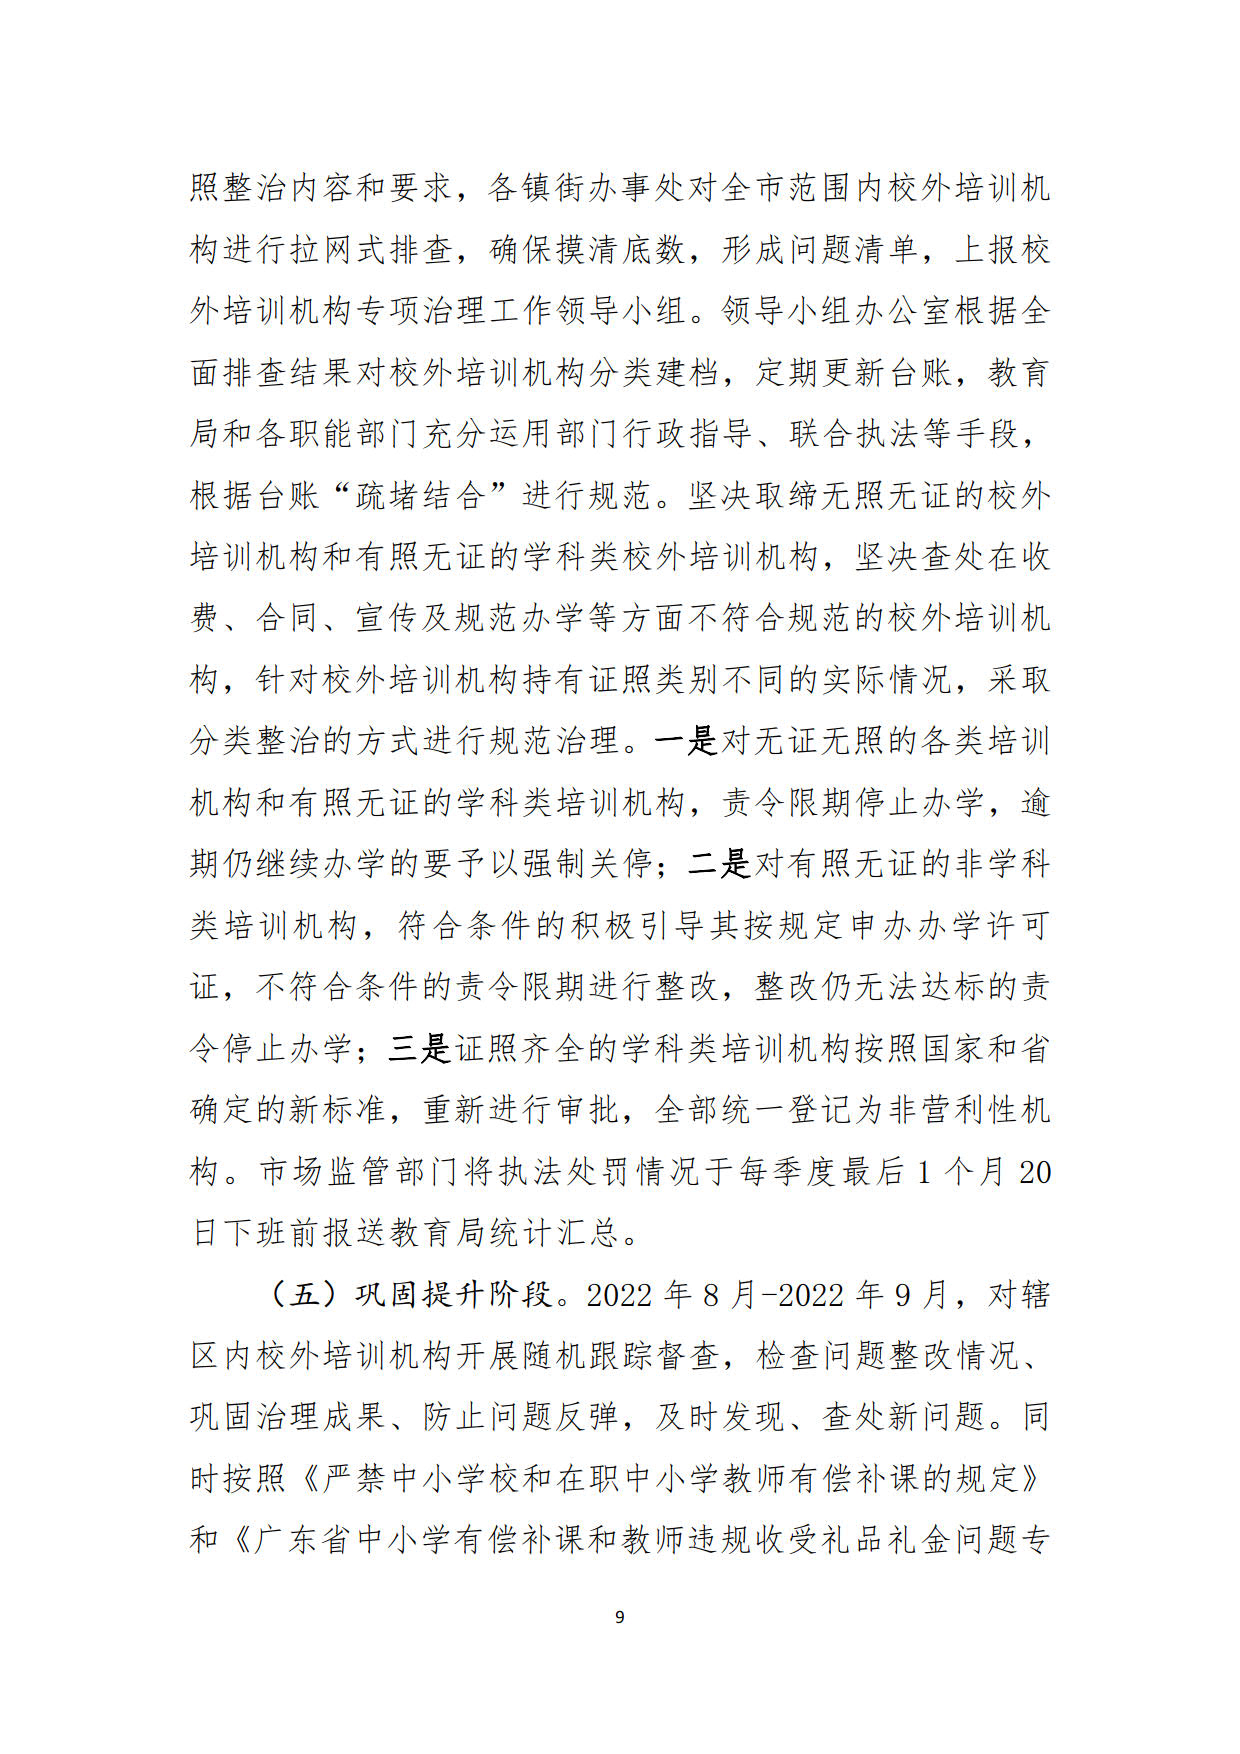 （20211213）兴宁市校外培训机构专项整治方案（征求意见稿）_9.jpg